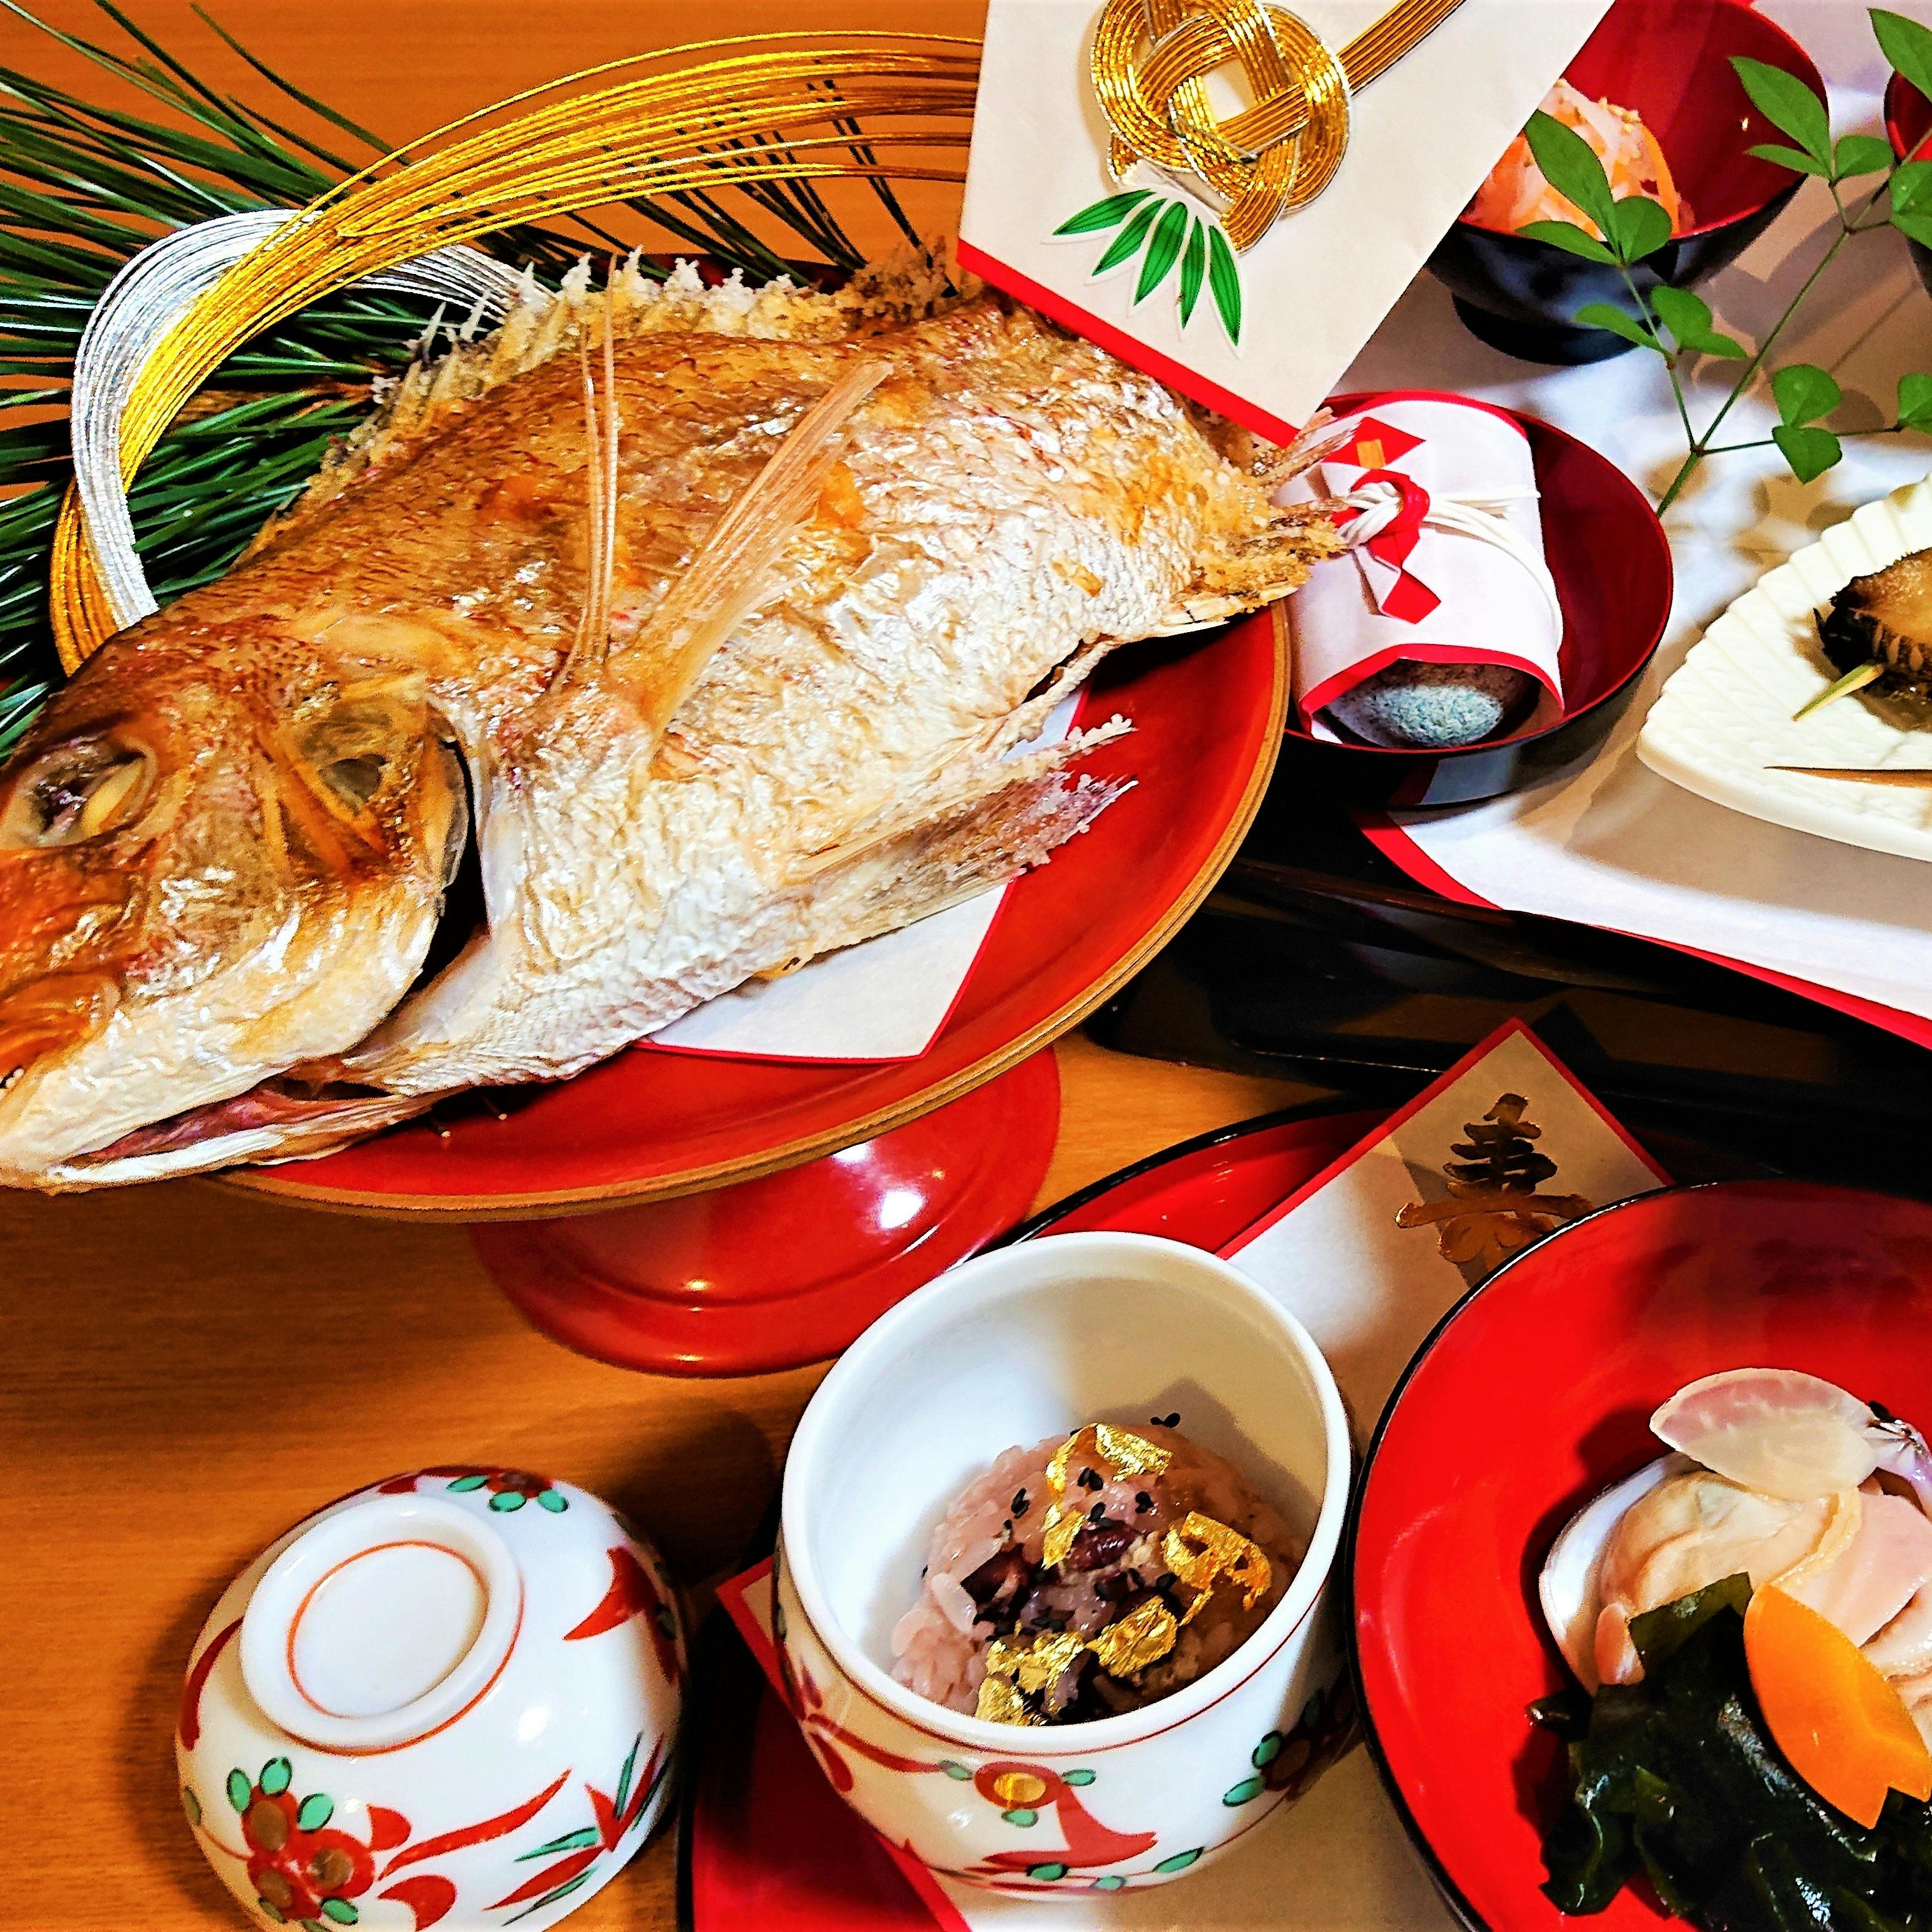 【お食い初め膳】尾頭付き鯛やお赤飯、お吸い物などお祝い膳